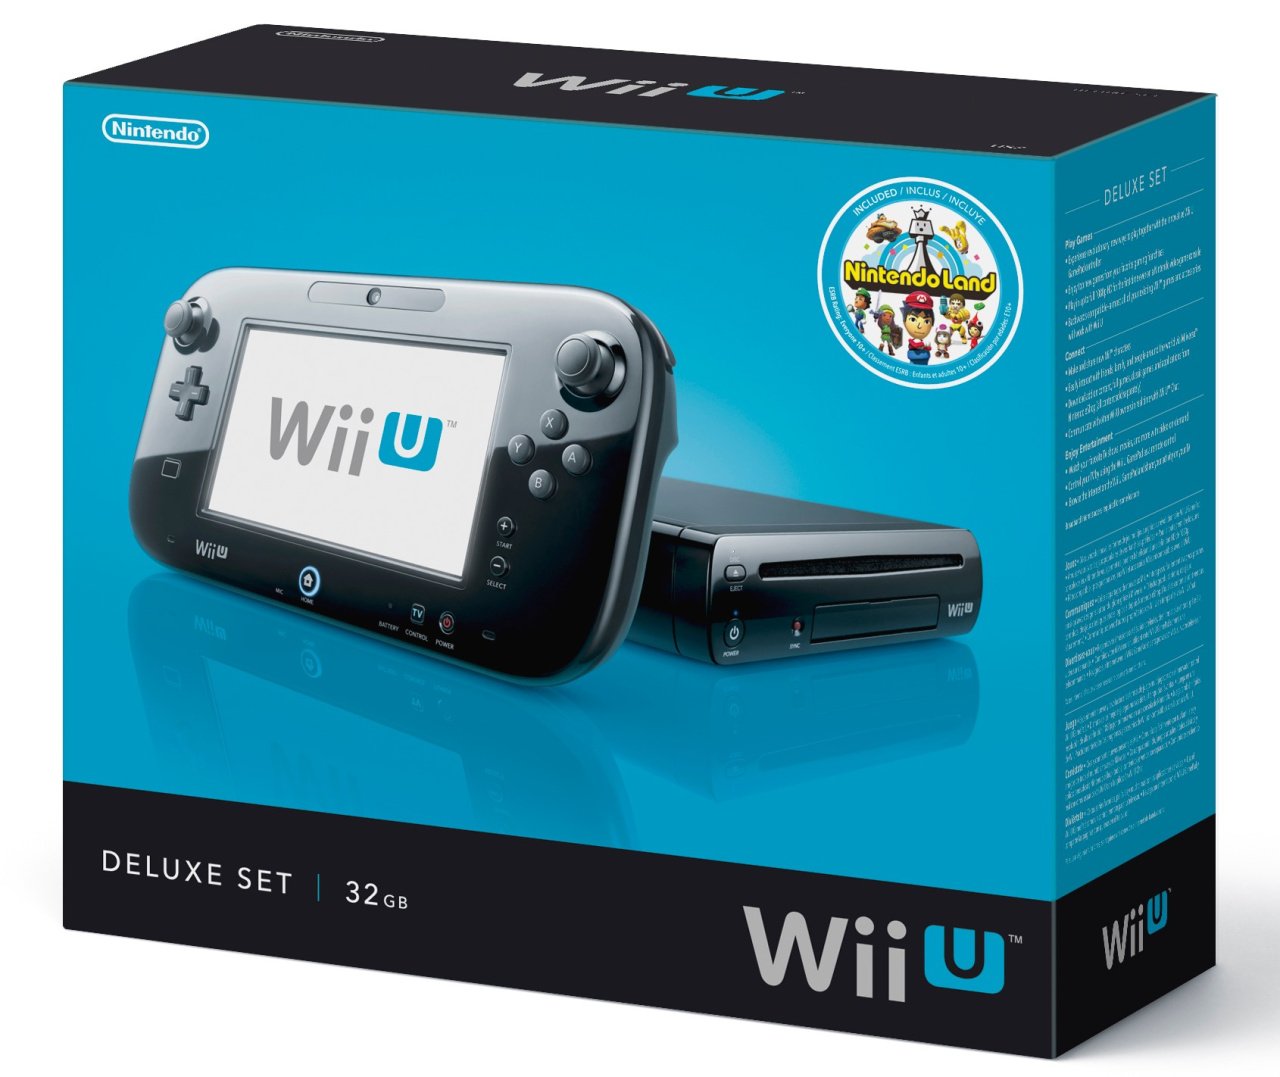 Nintendo Wii U arrives November 18 starting at $299 - CNET